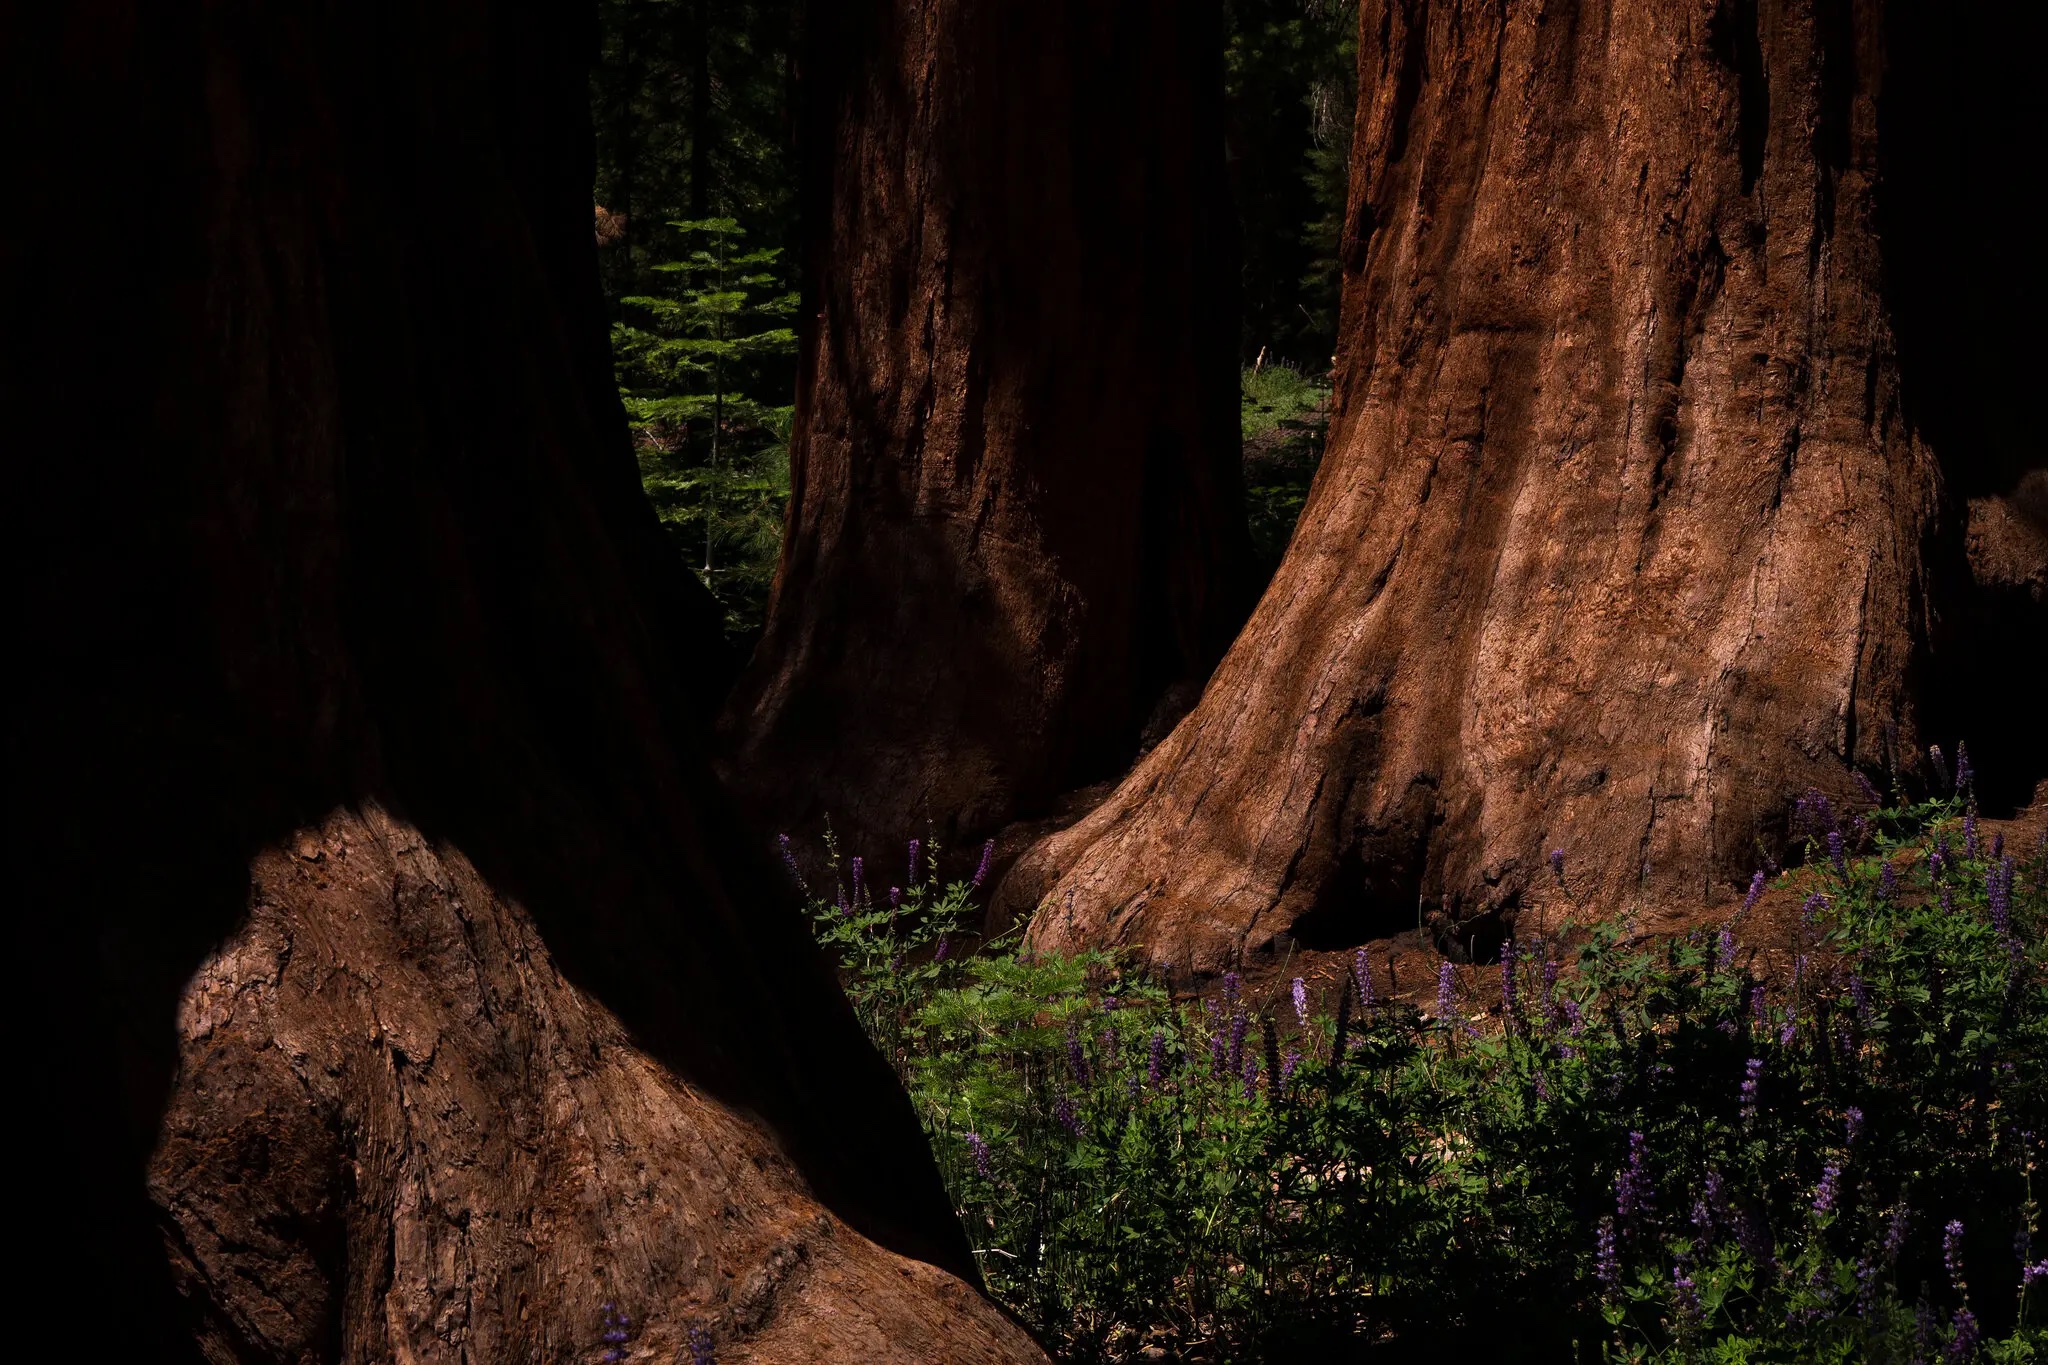 giant sequoia tree